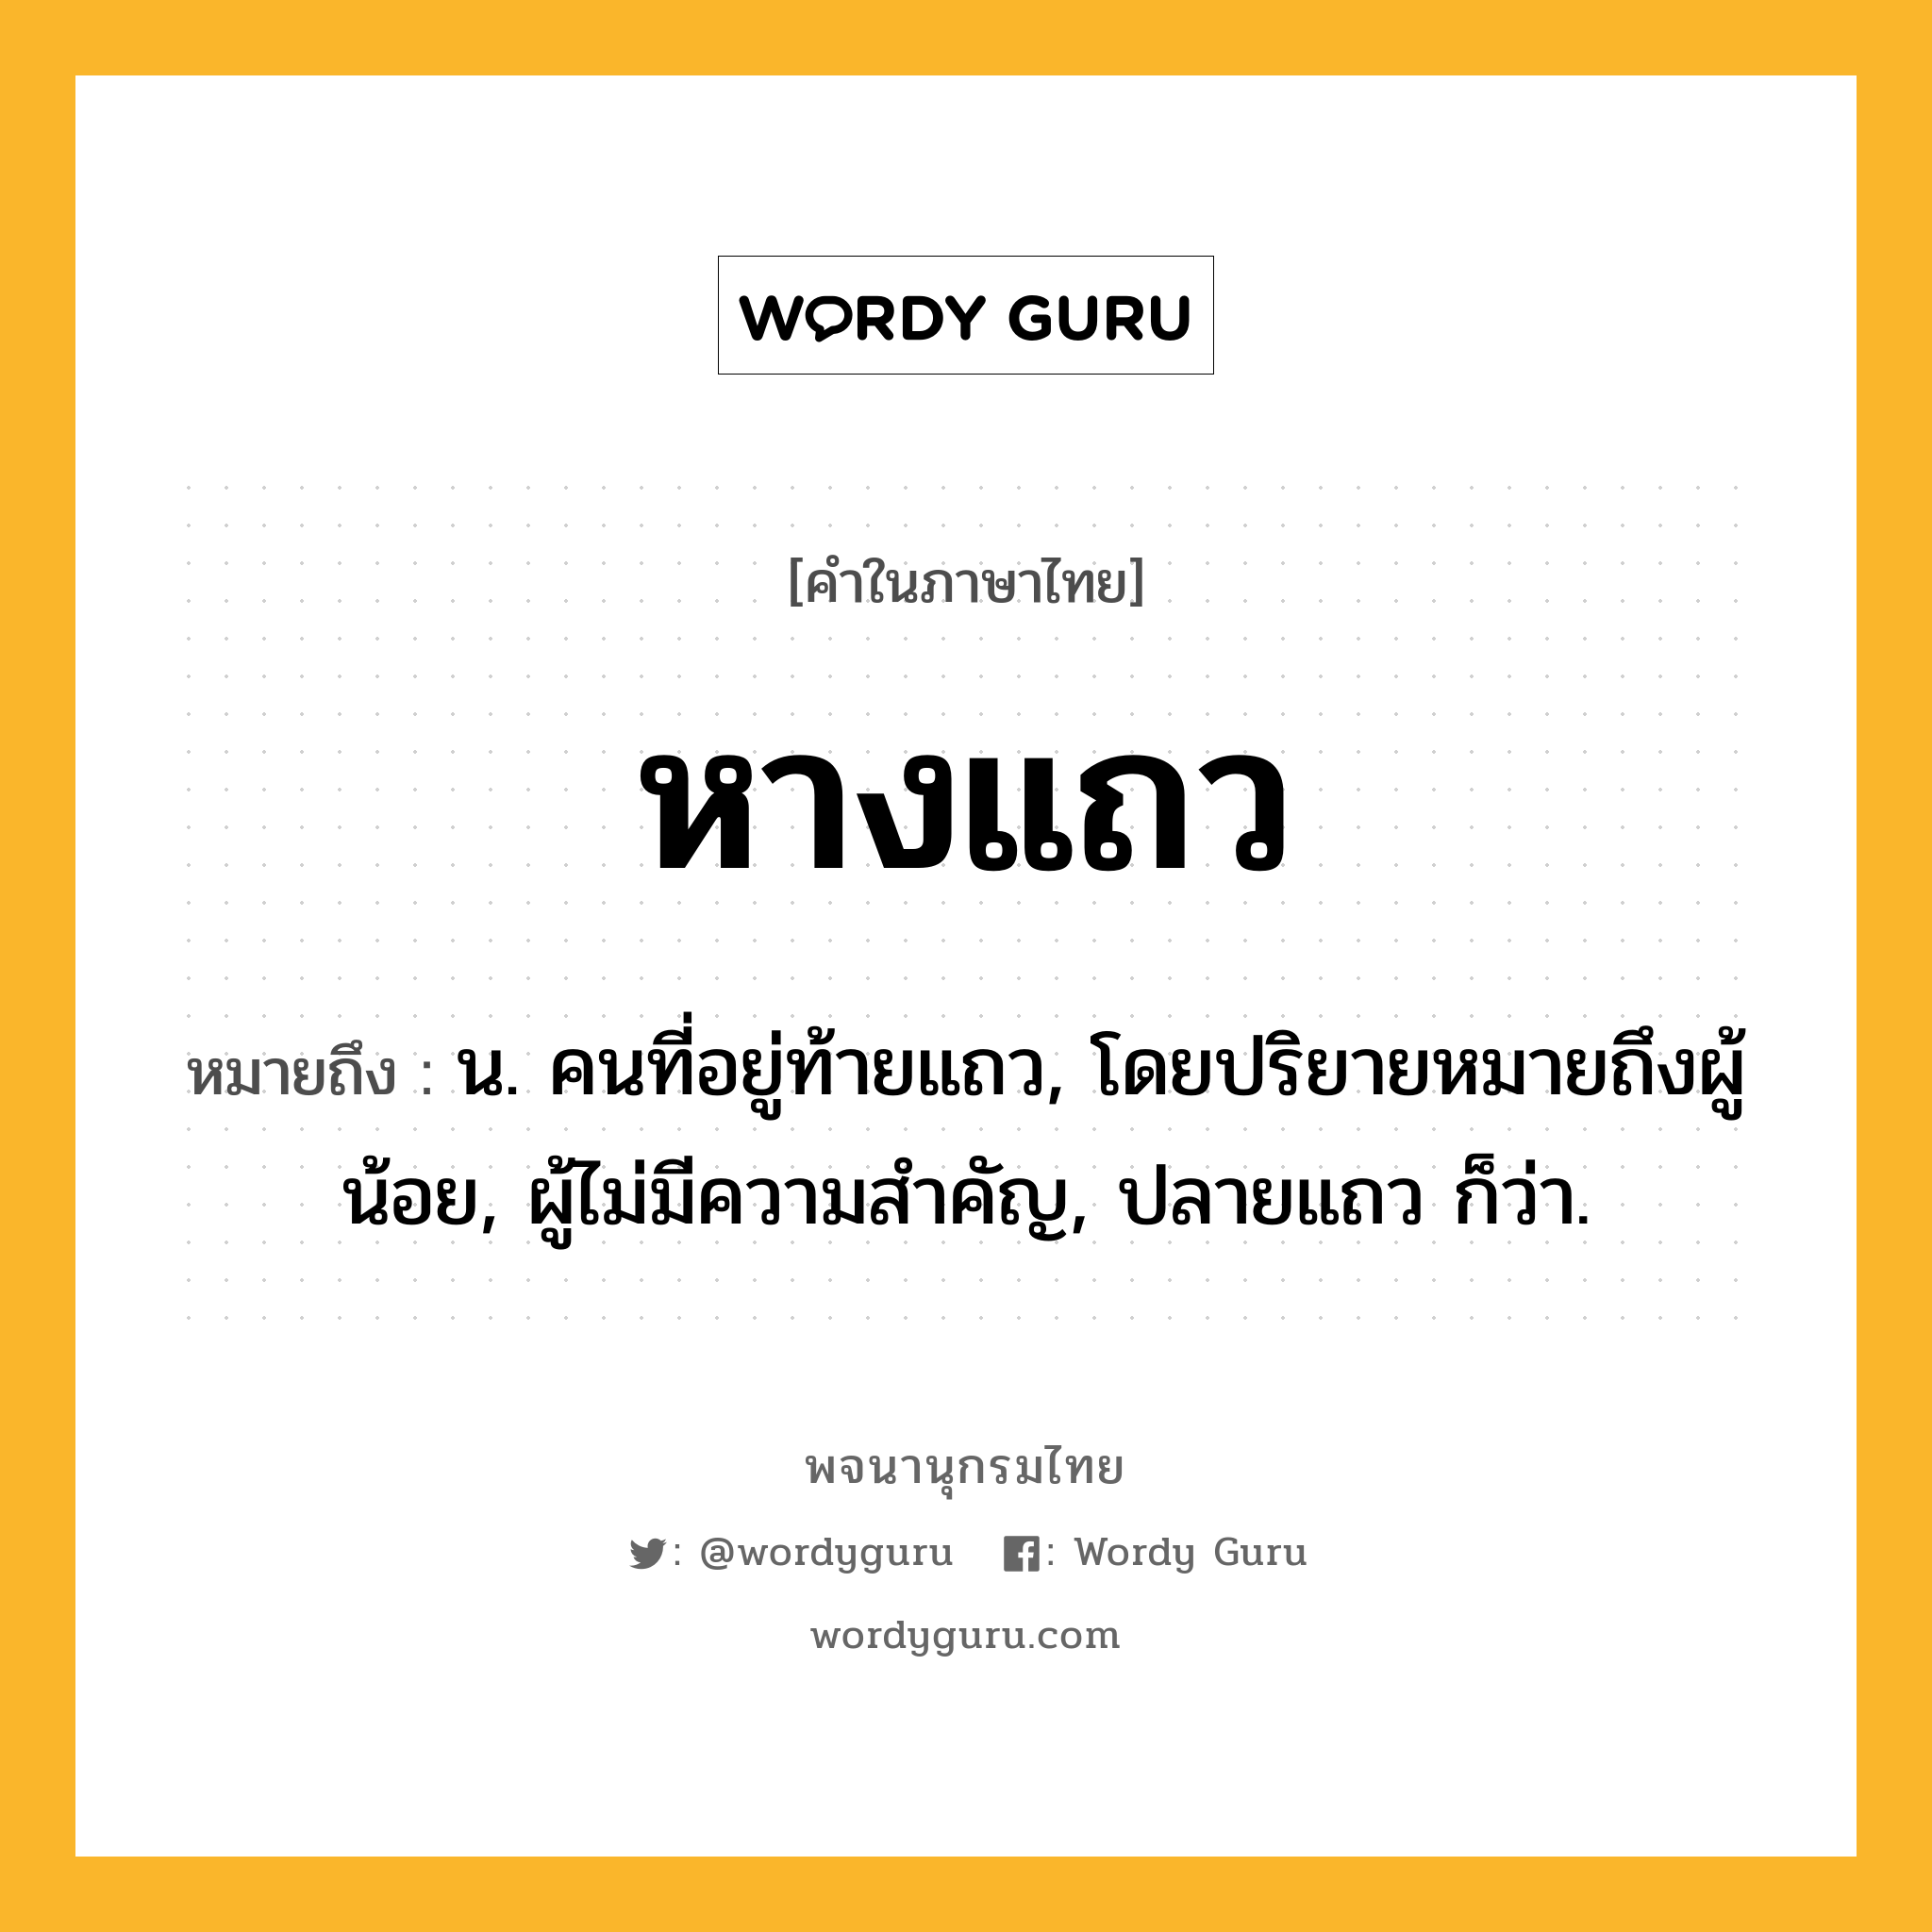 หางแถว ความหมาย หมายถึงอะไร?, คำในภาษาไทย หางแถว หมายถึง น. คนที่อยู่ท้ายแถว, โดยปริยายหมายถึงผู้น้อย, ผู้ไม่มีความสำคัญ, ปลายแถว ก็ว่า.